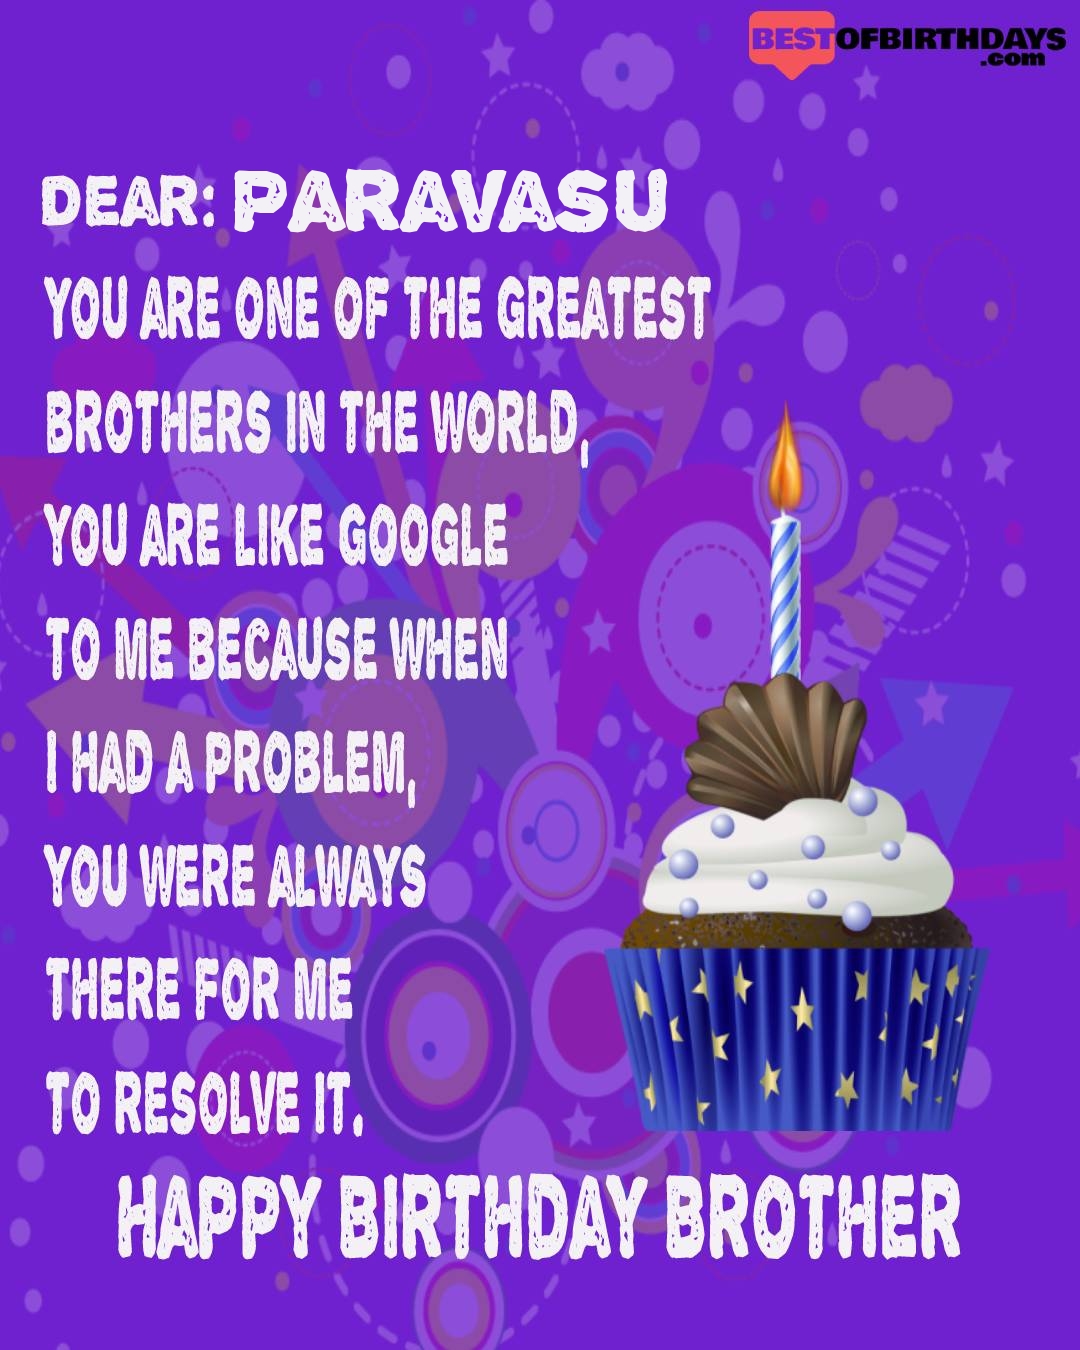 Happy birthday paravasu bhai brother bro